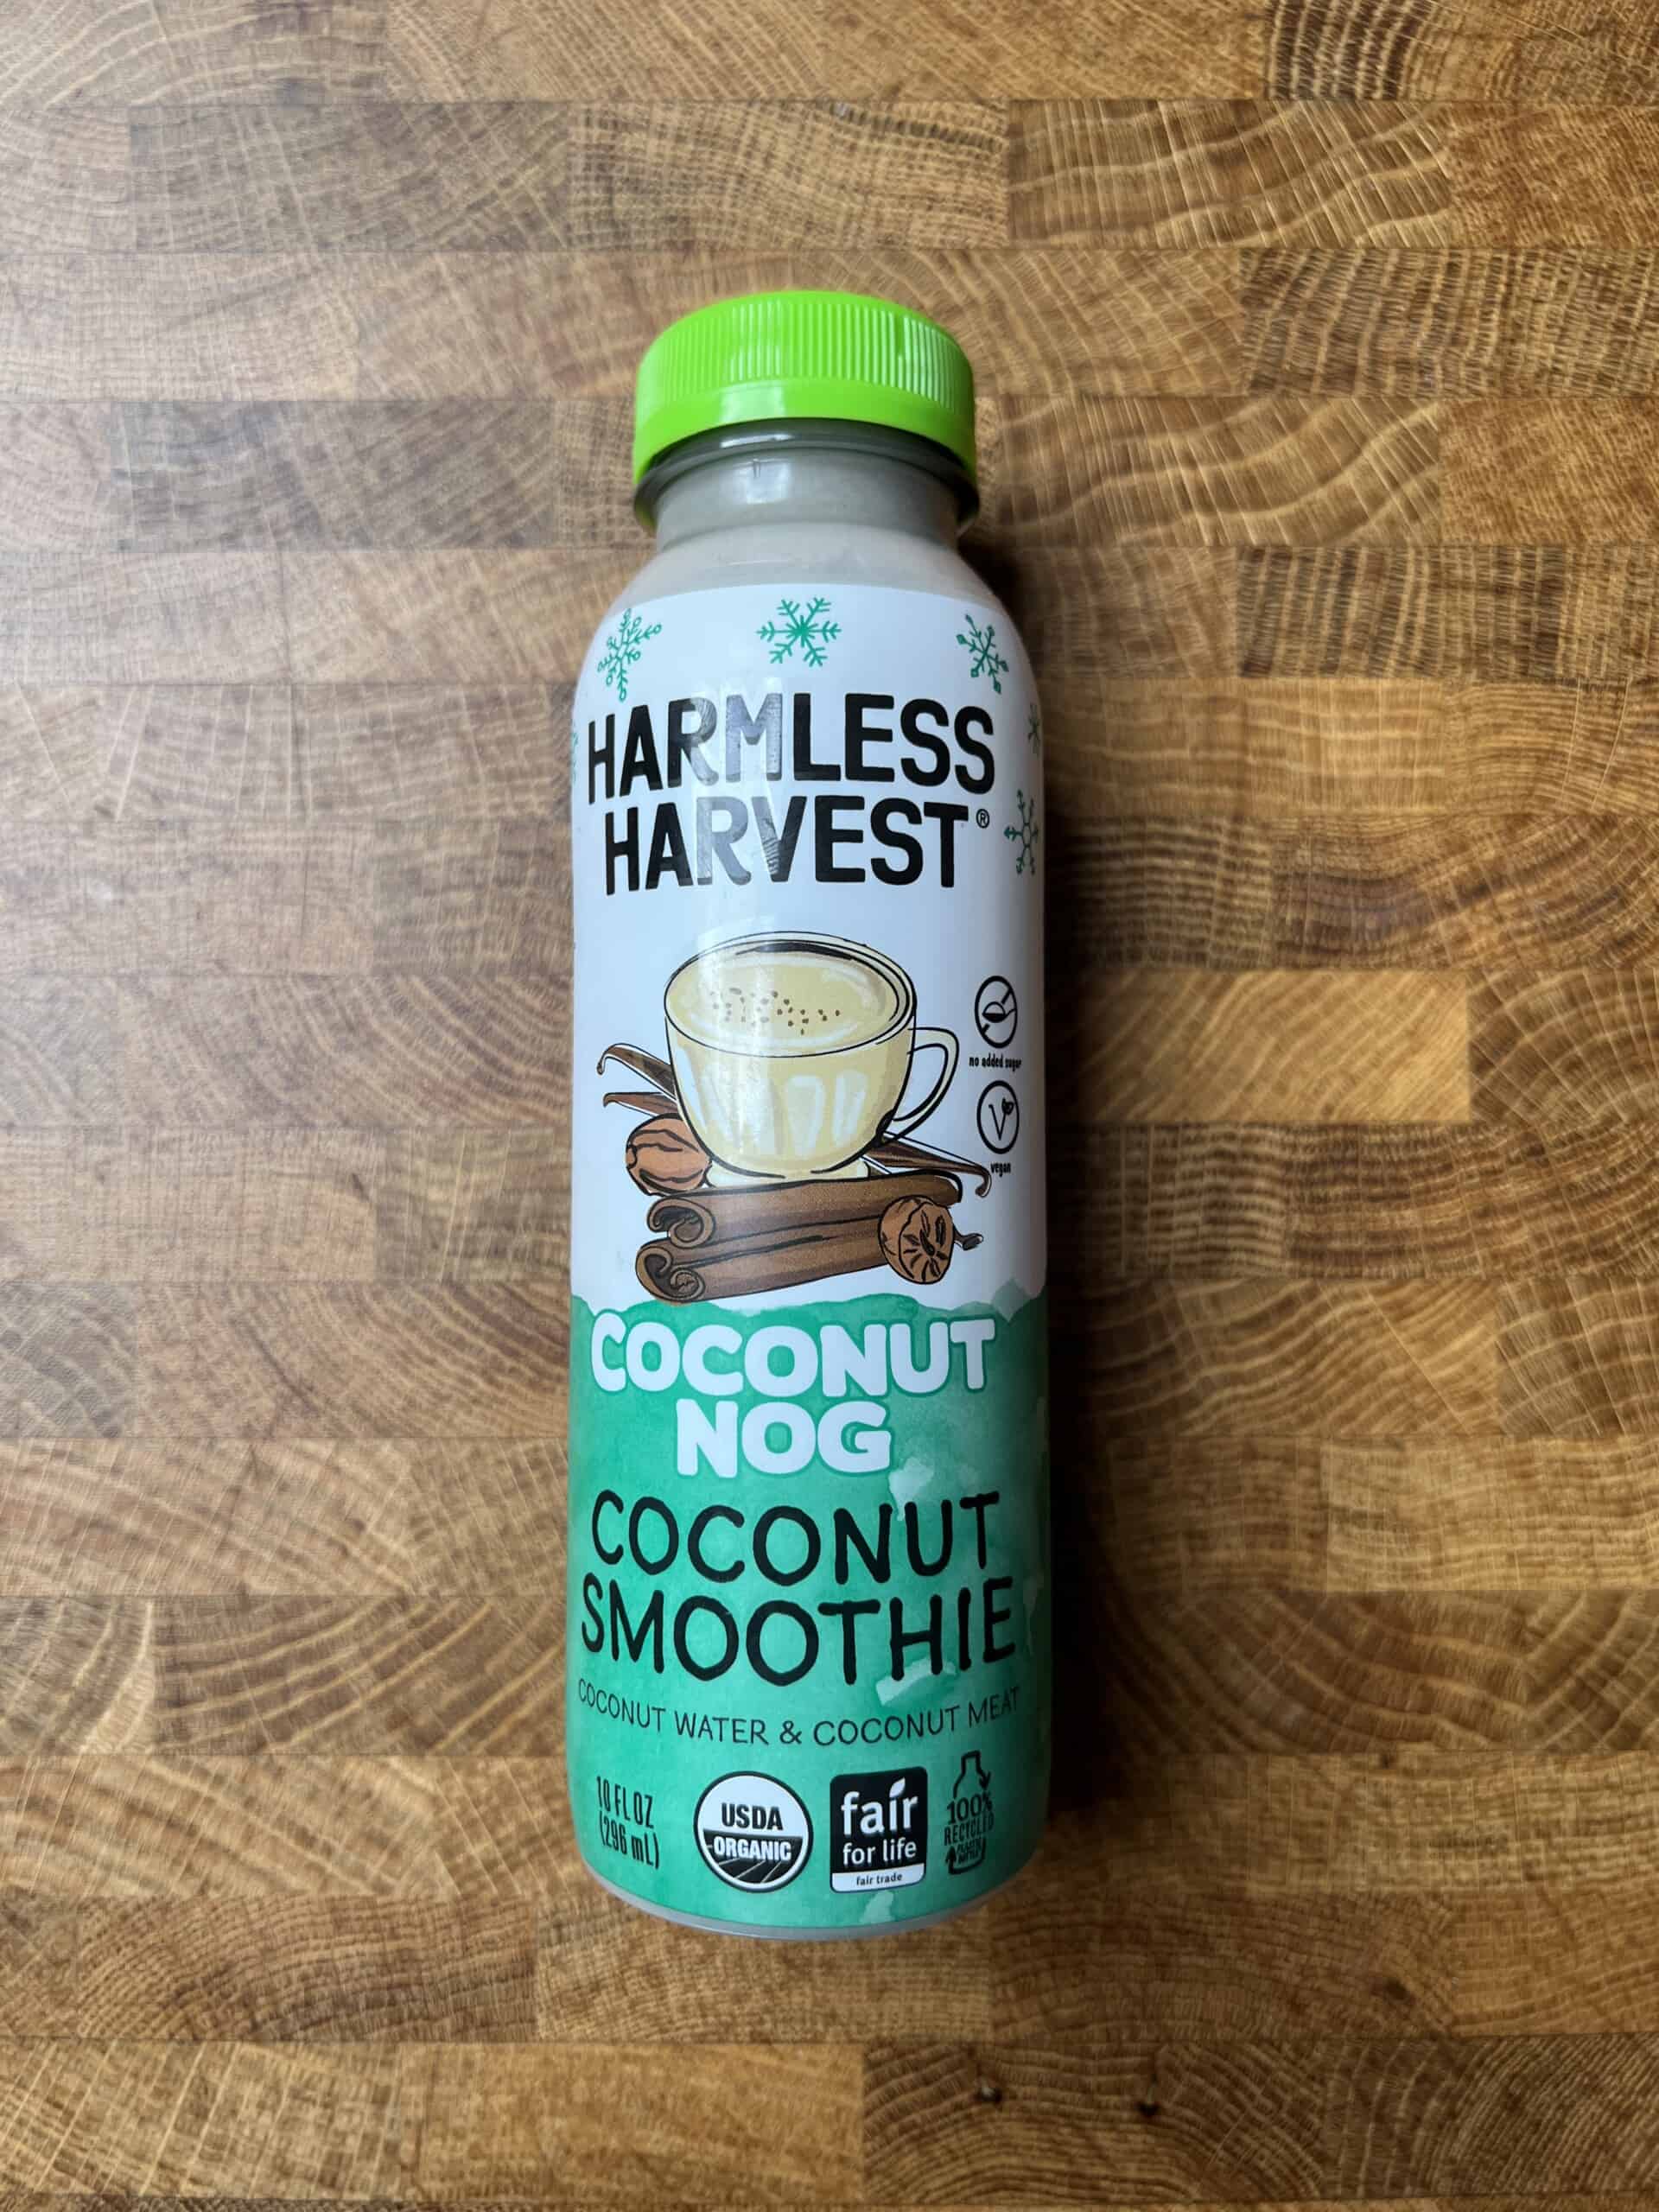 Harmless Harvest Coconut Nog bottle.